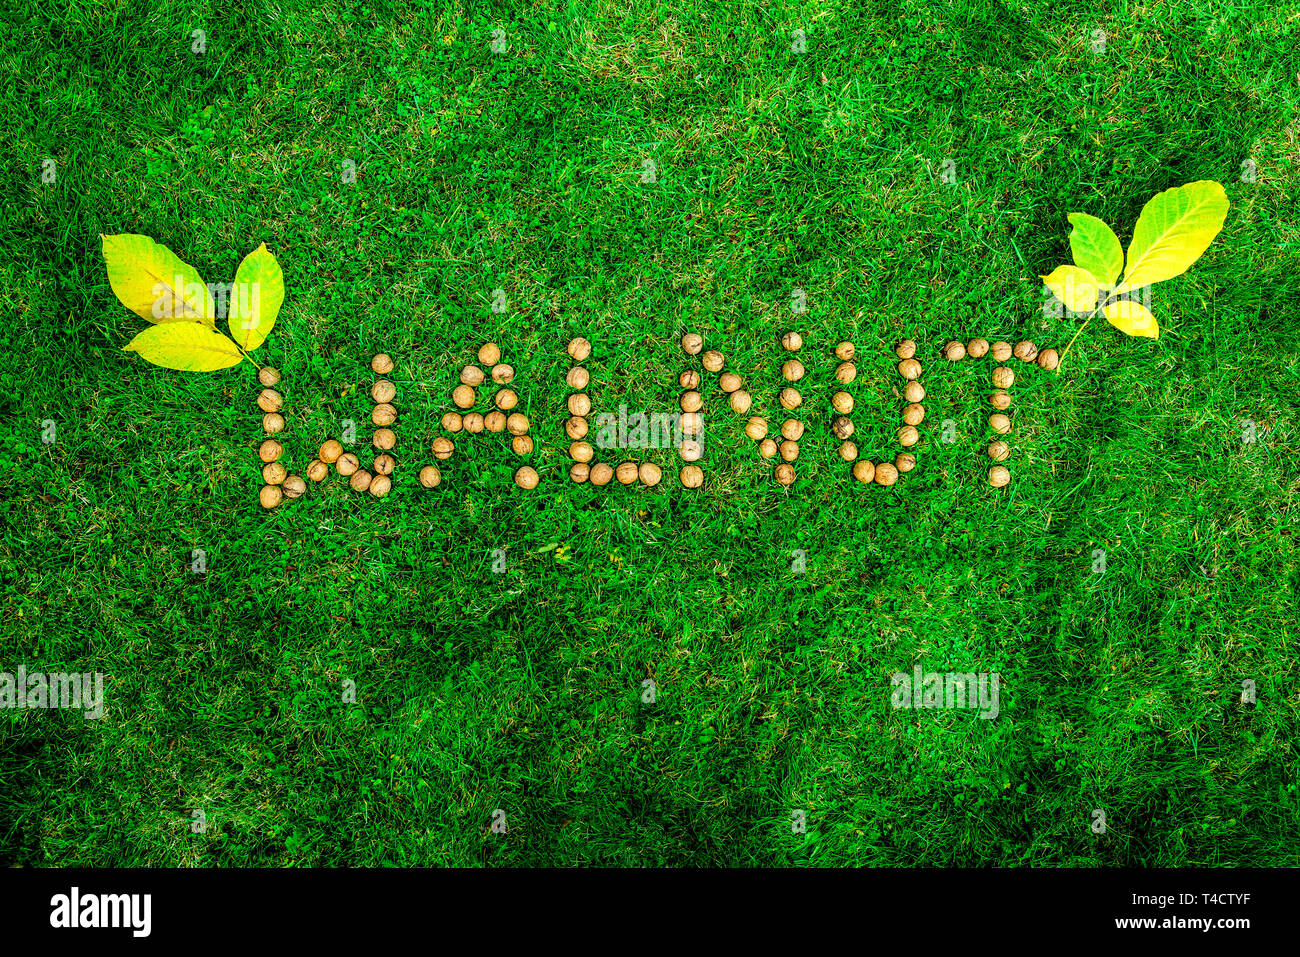 Aufschrift 'Walnuss' mit Walnüssen auf grünem Gras Stockfoto